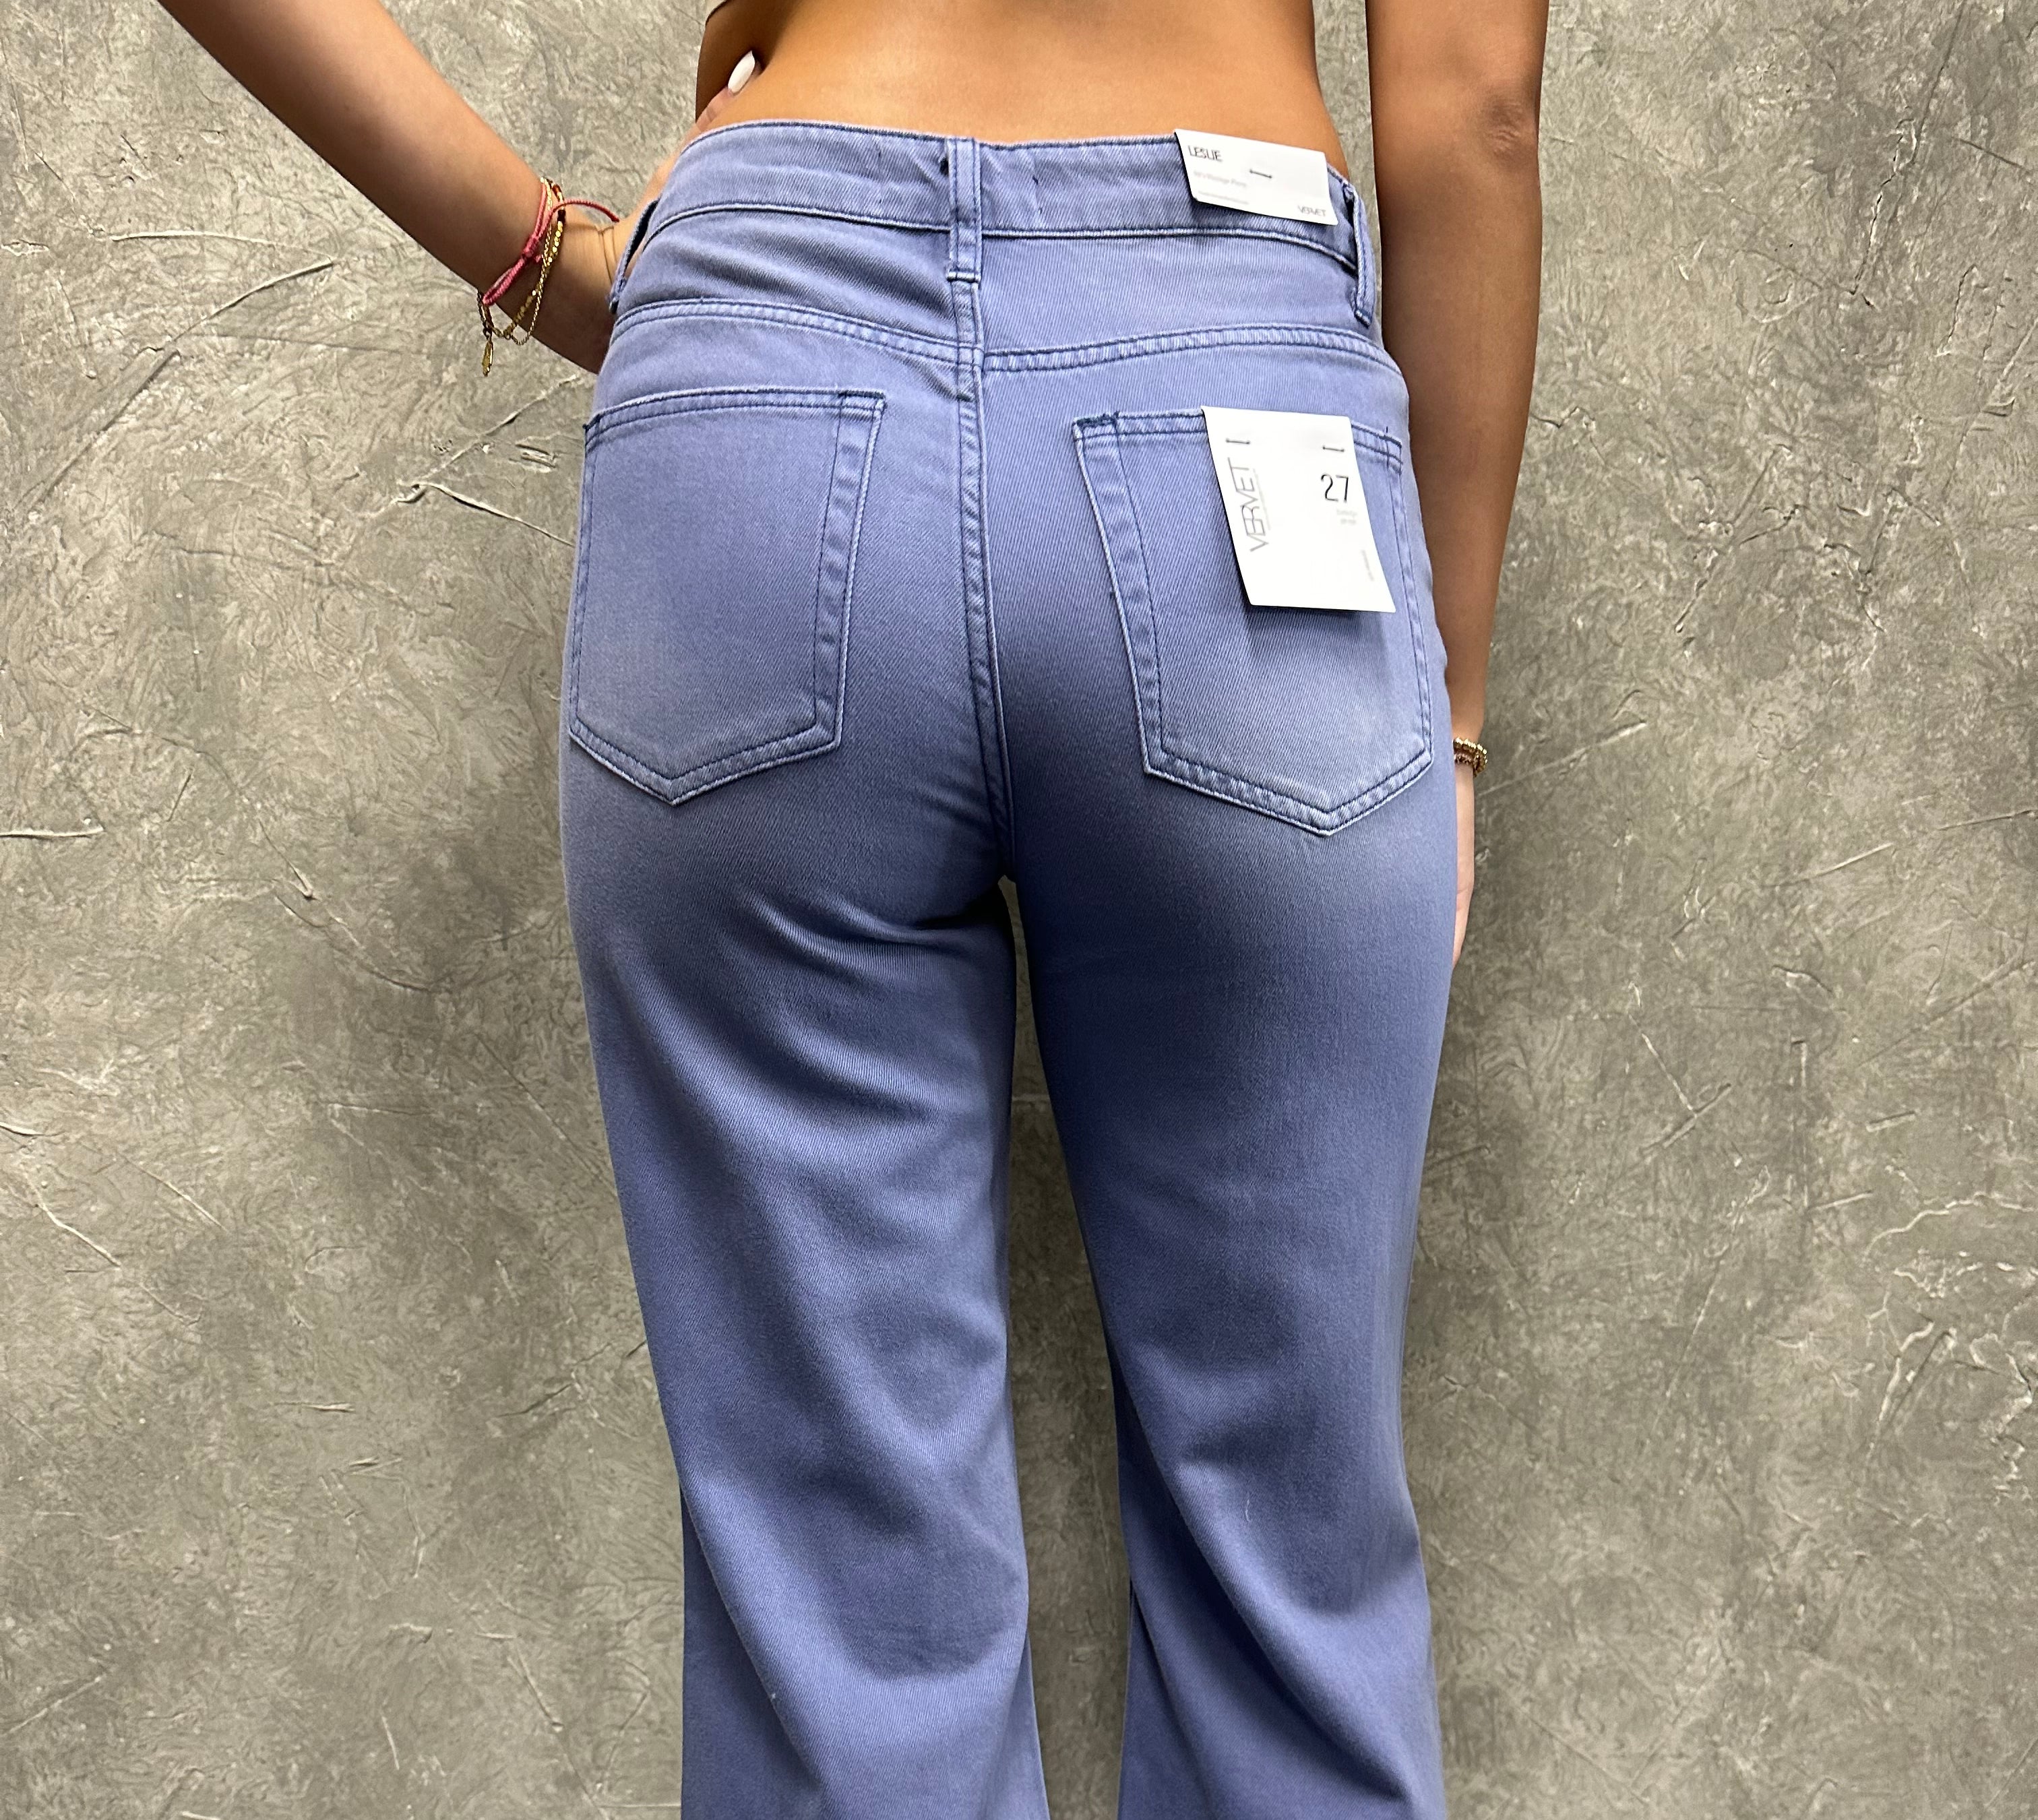 Mabel Vintage Distressed Jeans-Jeans-UrbanCulture-Boutique, A North Port, Florida Women's Fashion Boutique